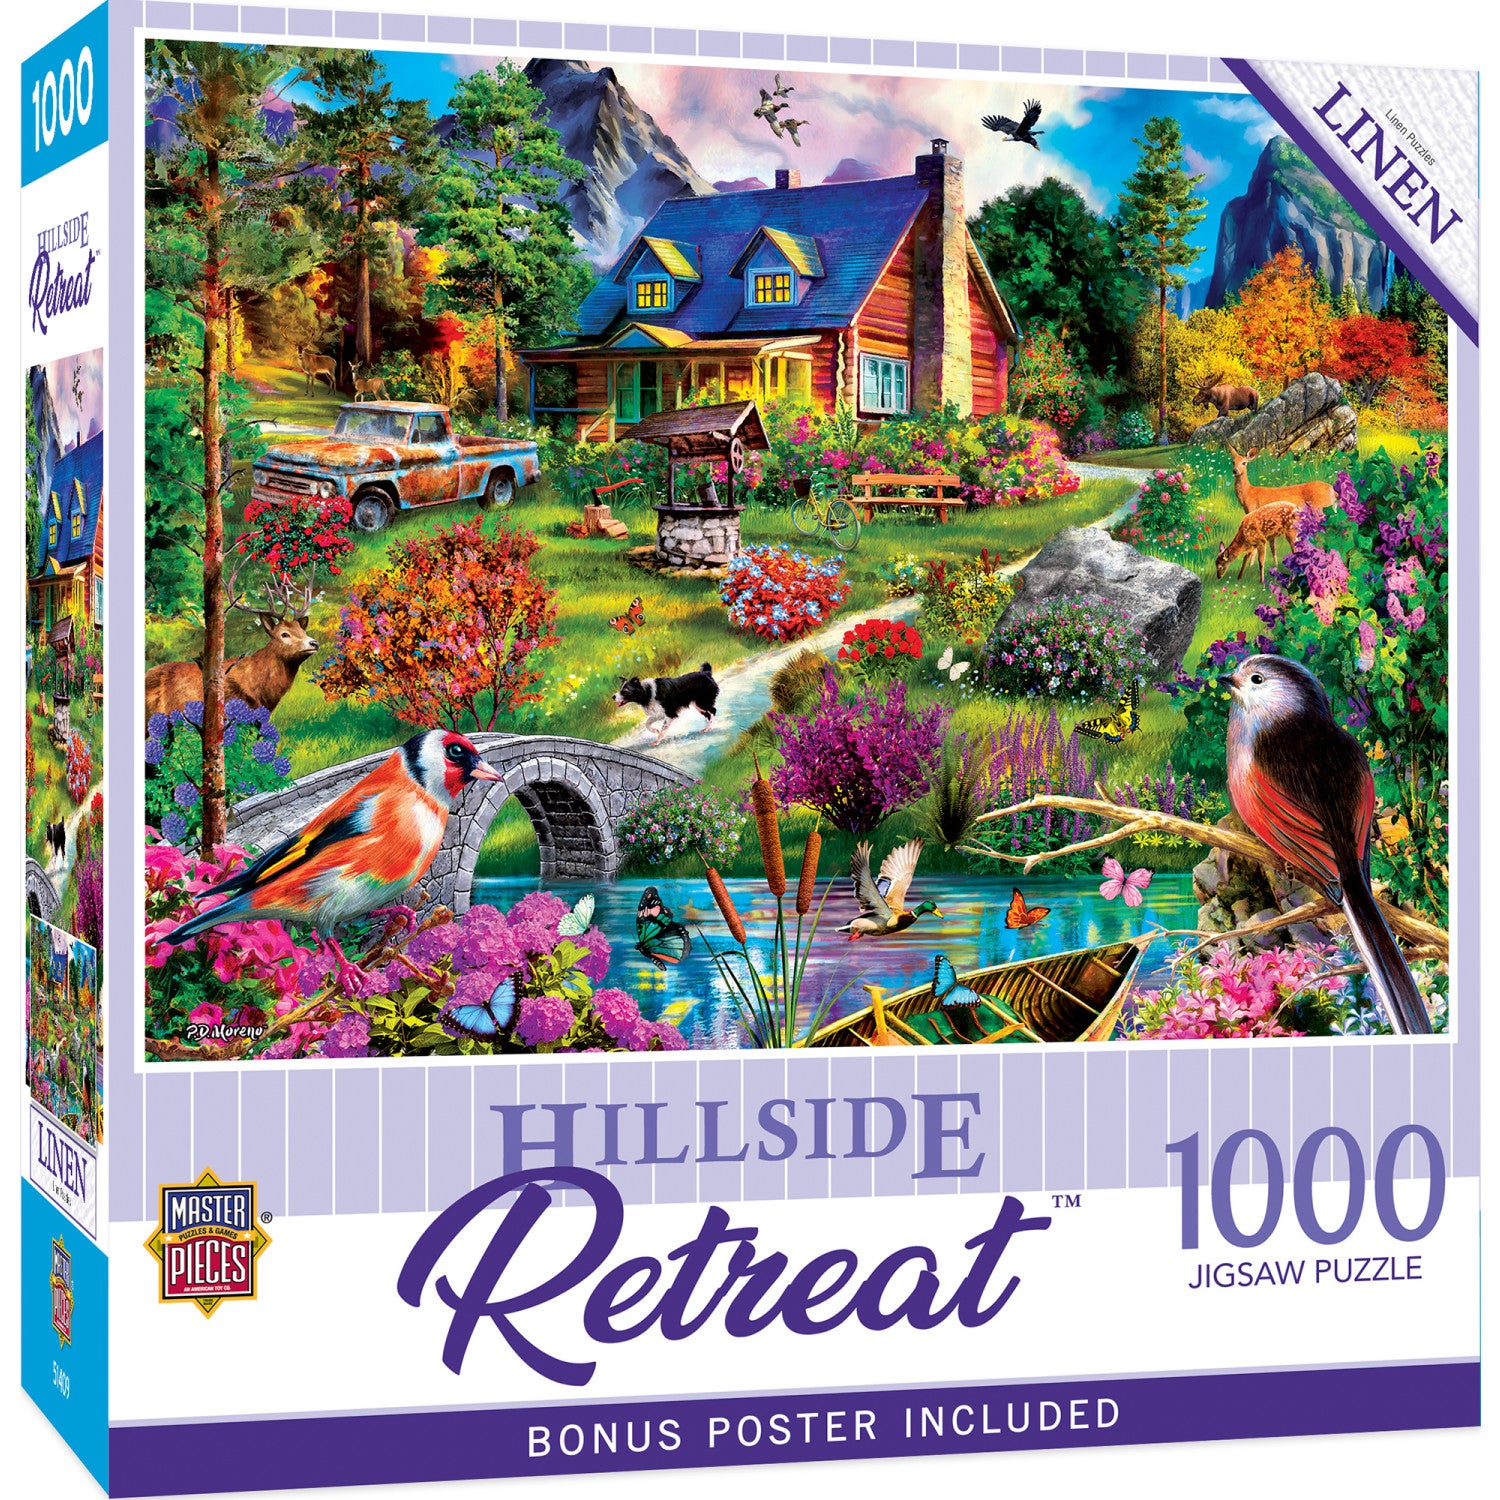 Retreats - Hillside Cottage 1000 Piece Puzzle